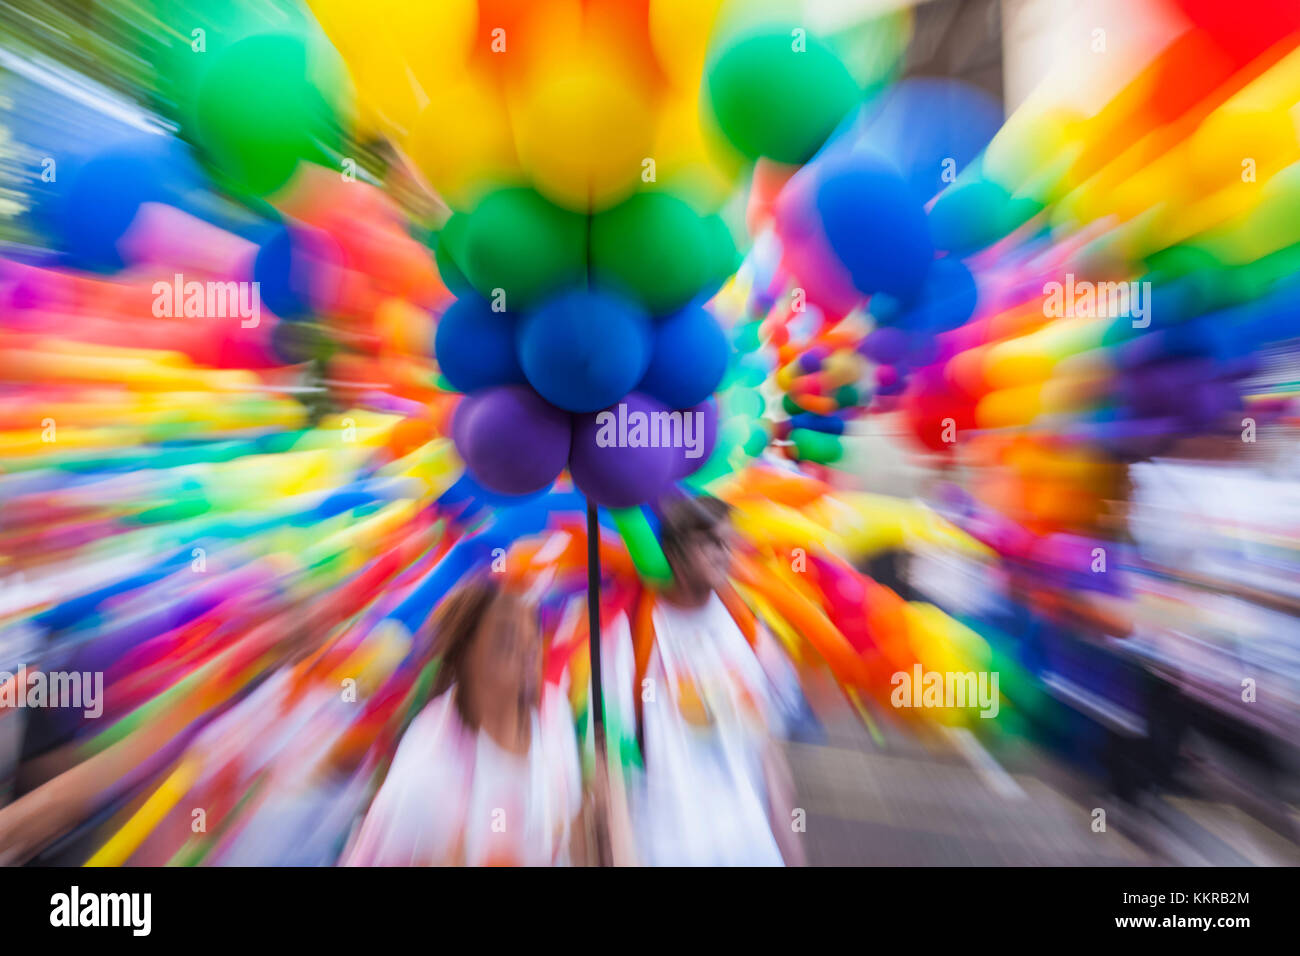 Orgoglio palloncini arcobaleno contro un albero verde Foto stock - Alamy